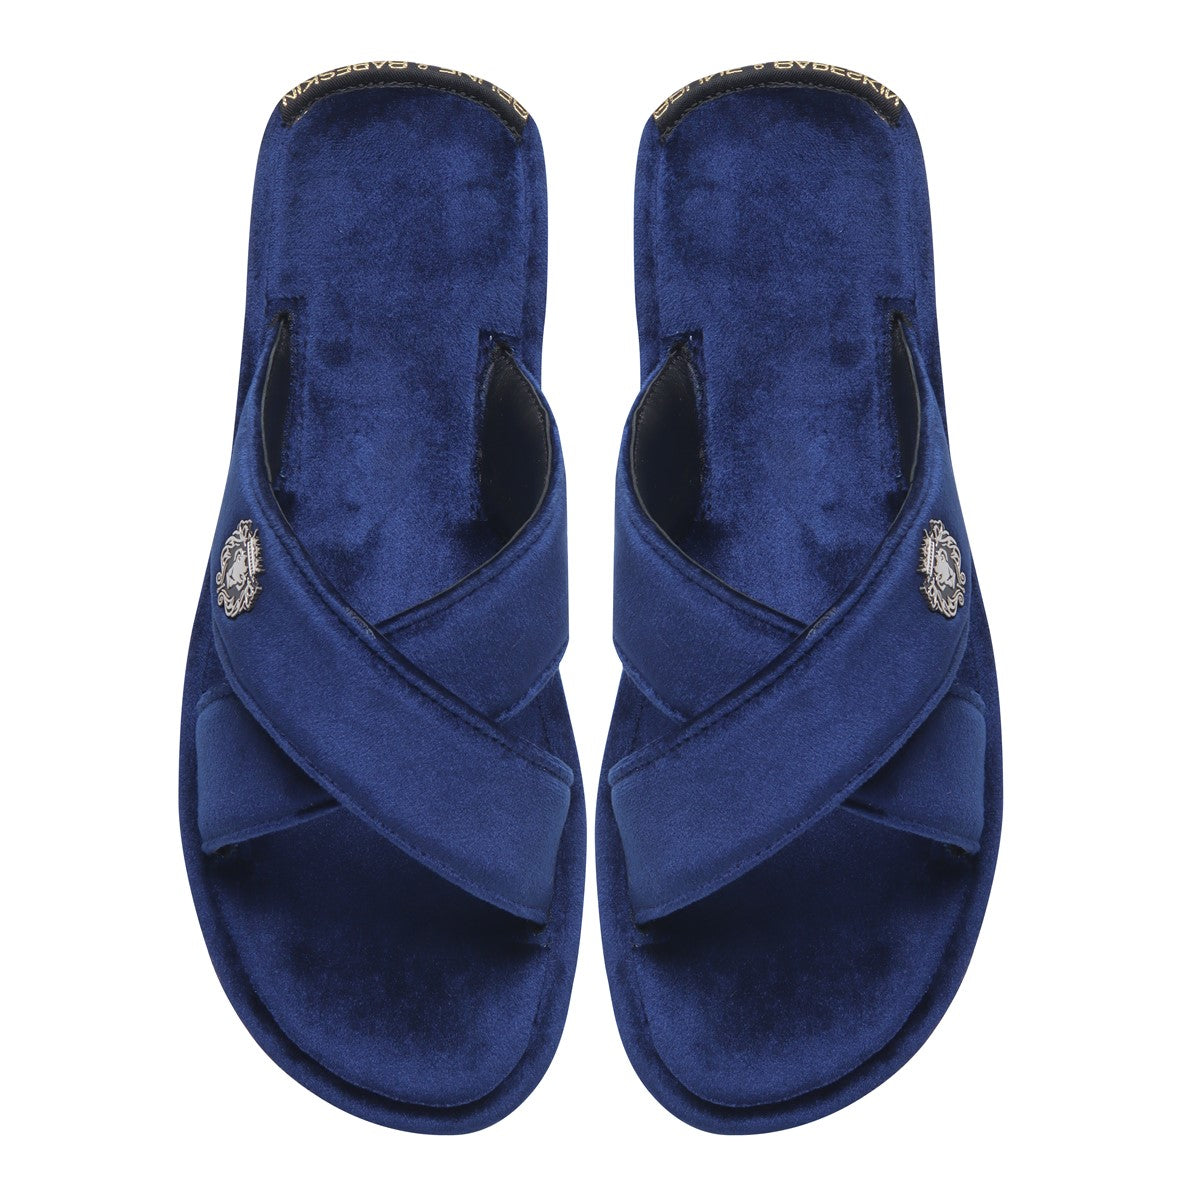 Blue Cross Straps Comfy Velvet Slide-in Slippers By Brune & Bareskin